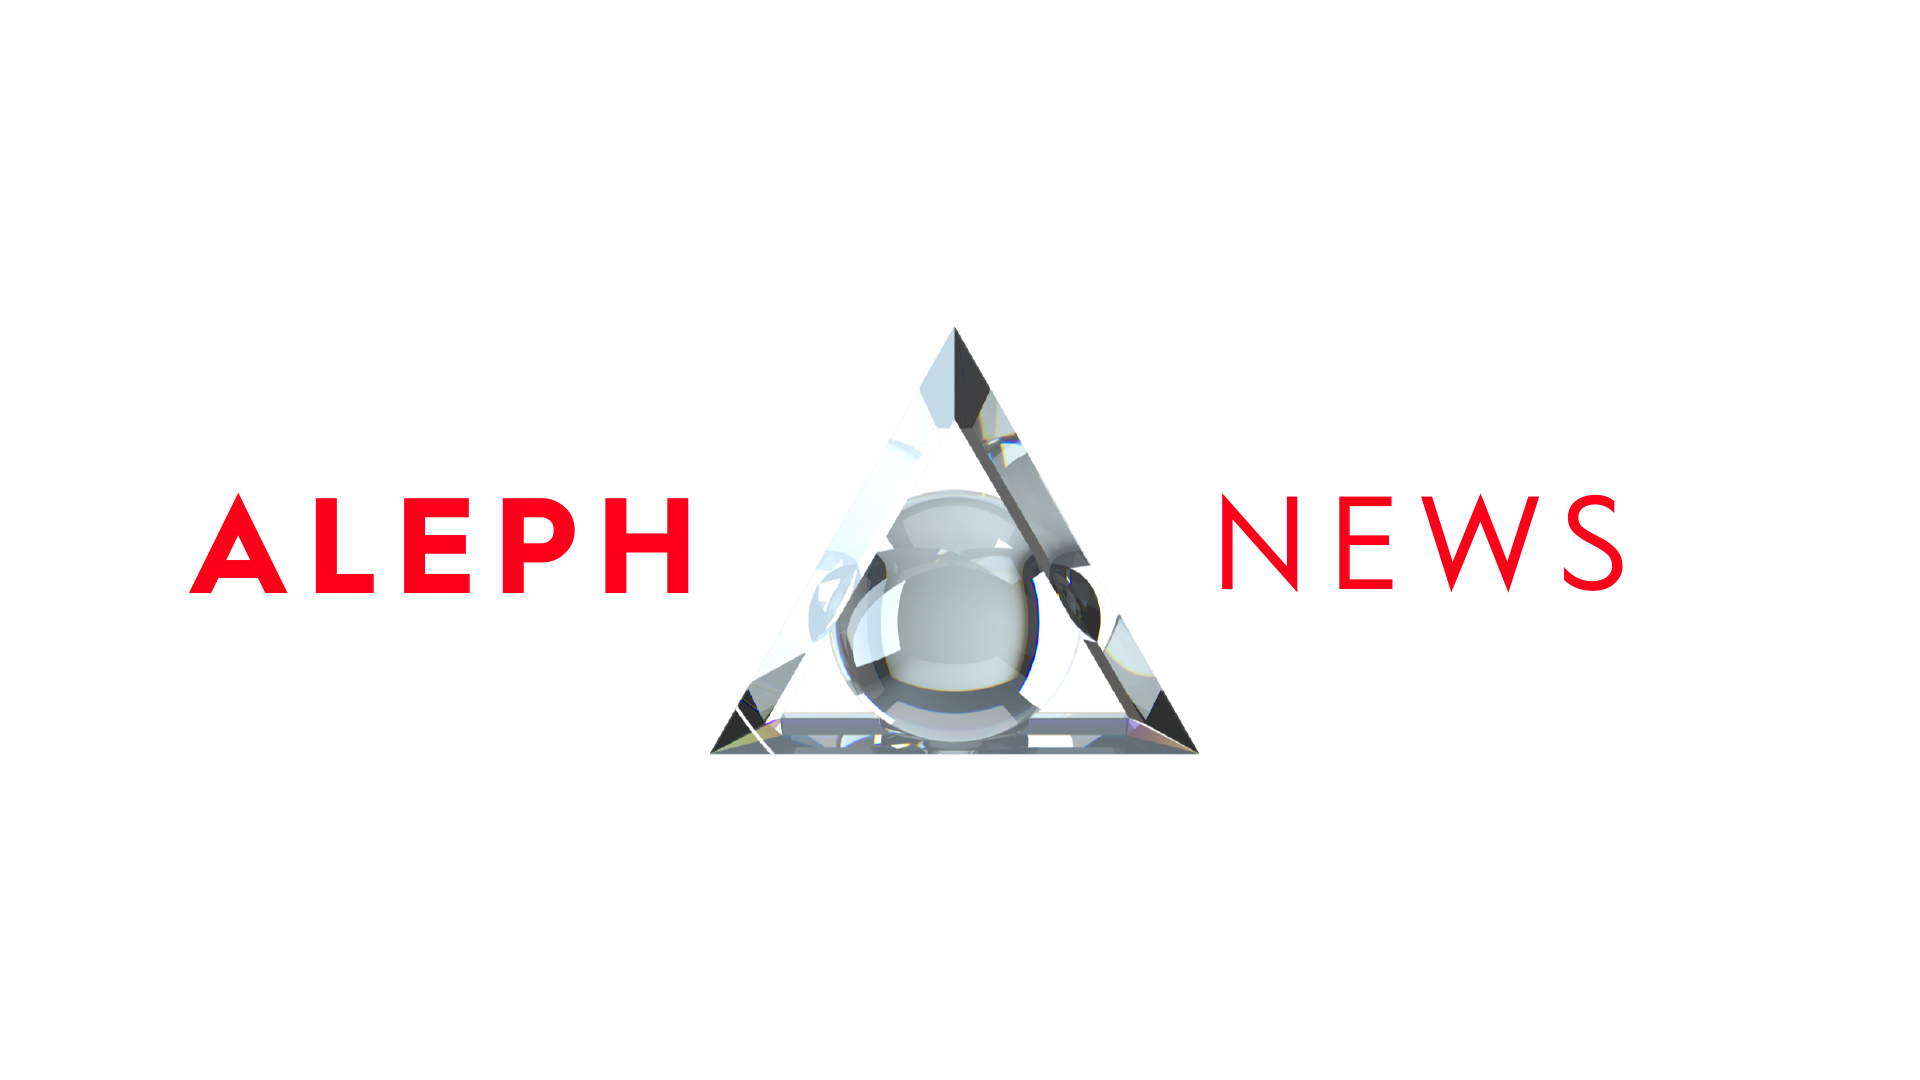 ALEPH NEWS